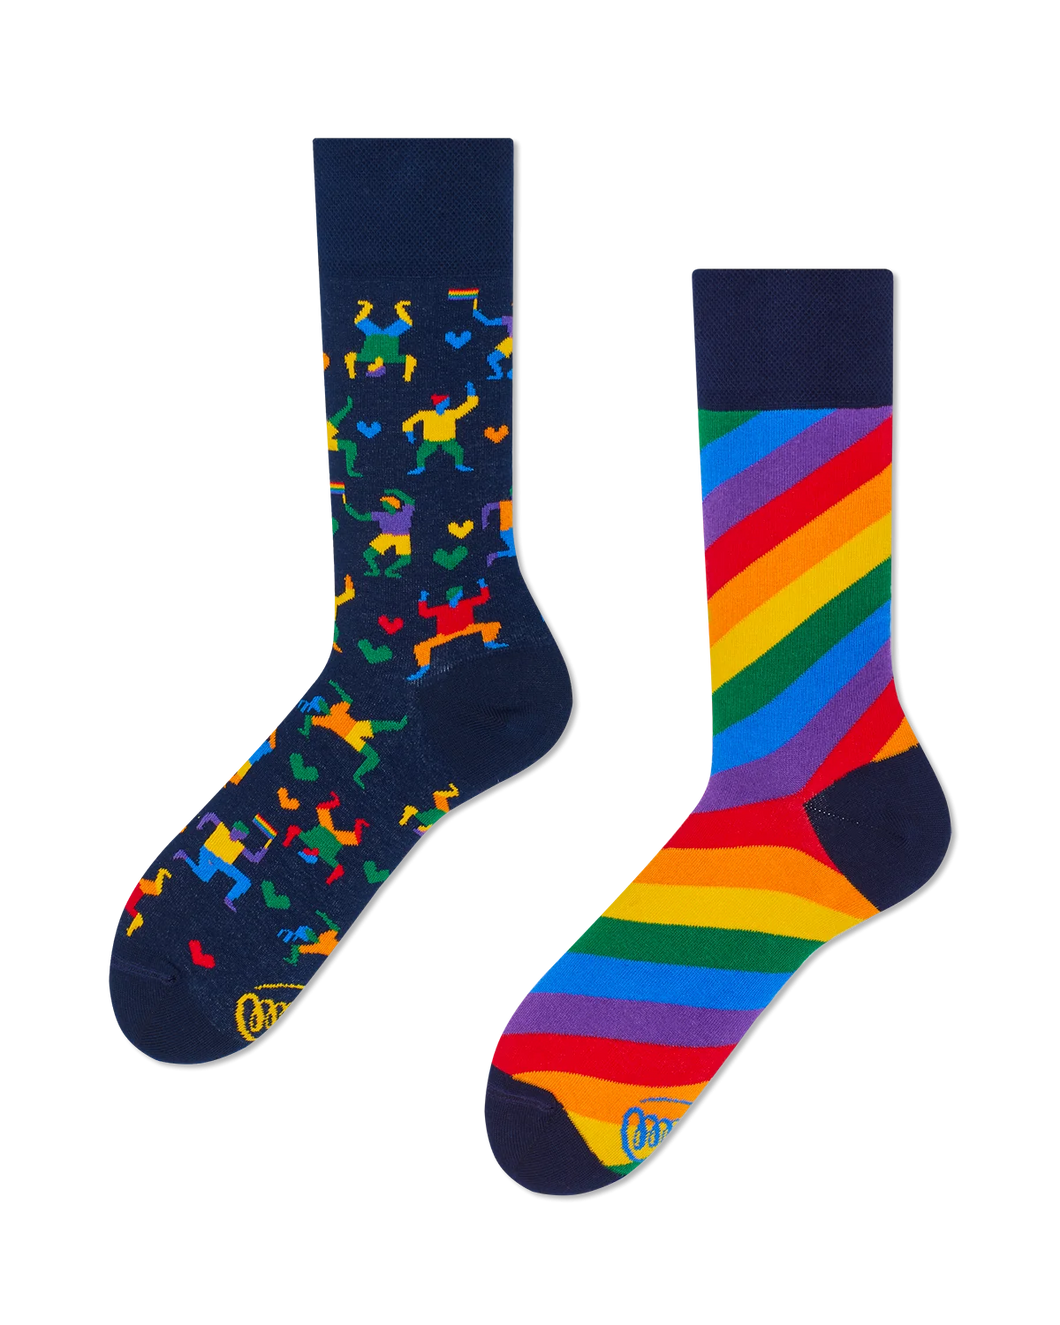 Rainbow socks